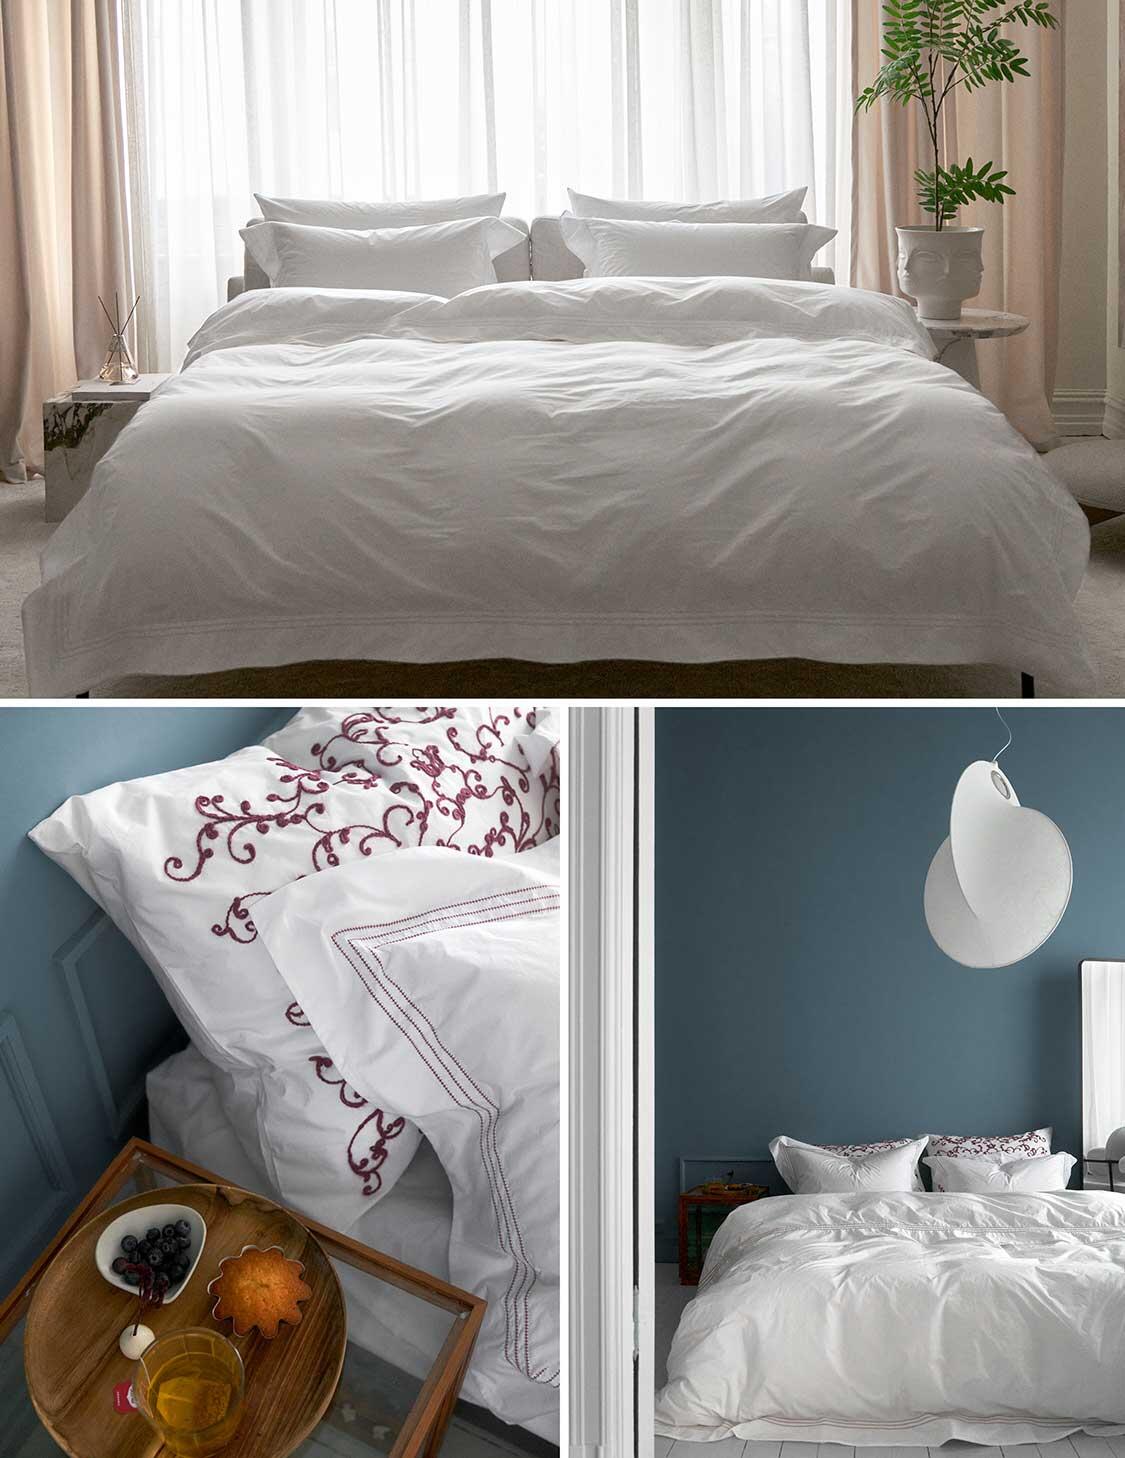 Ferdig oppredd seng sengetøy fra Tone Kroken - Habibi i hvitt